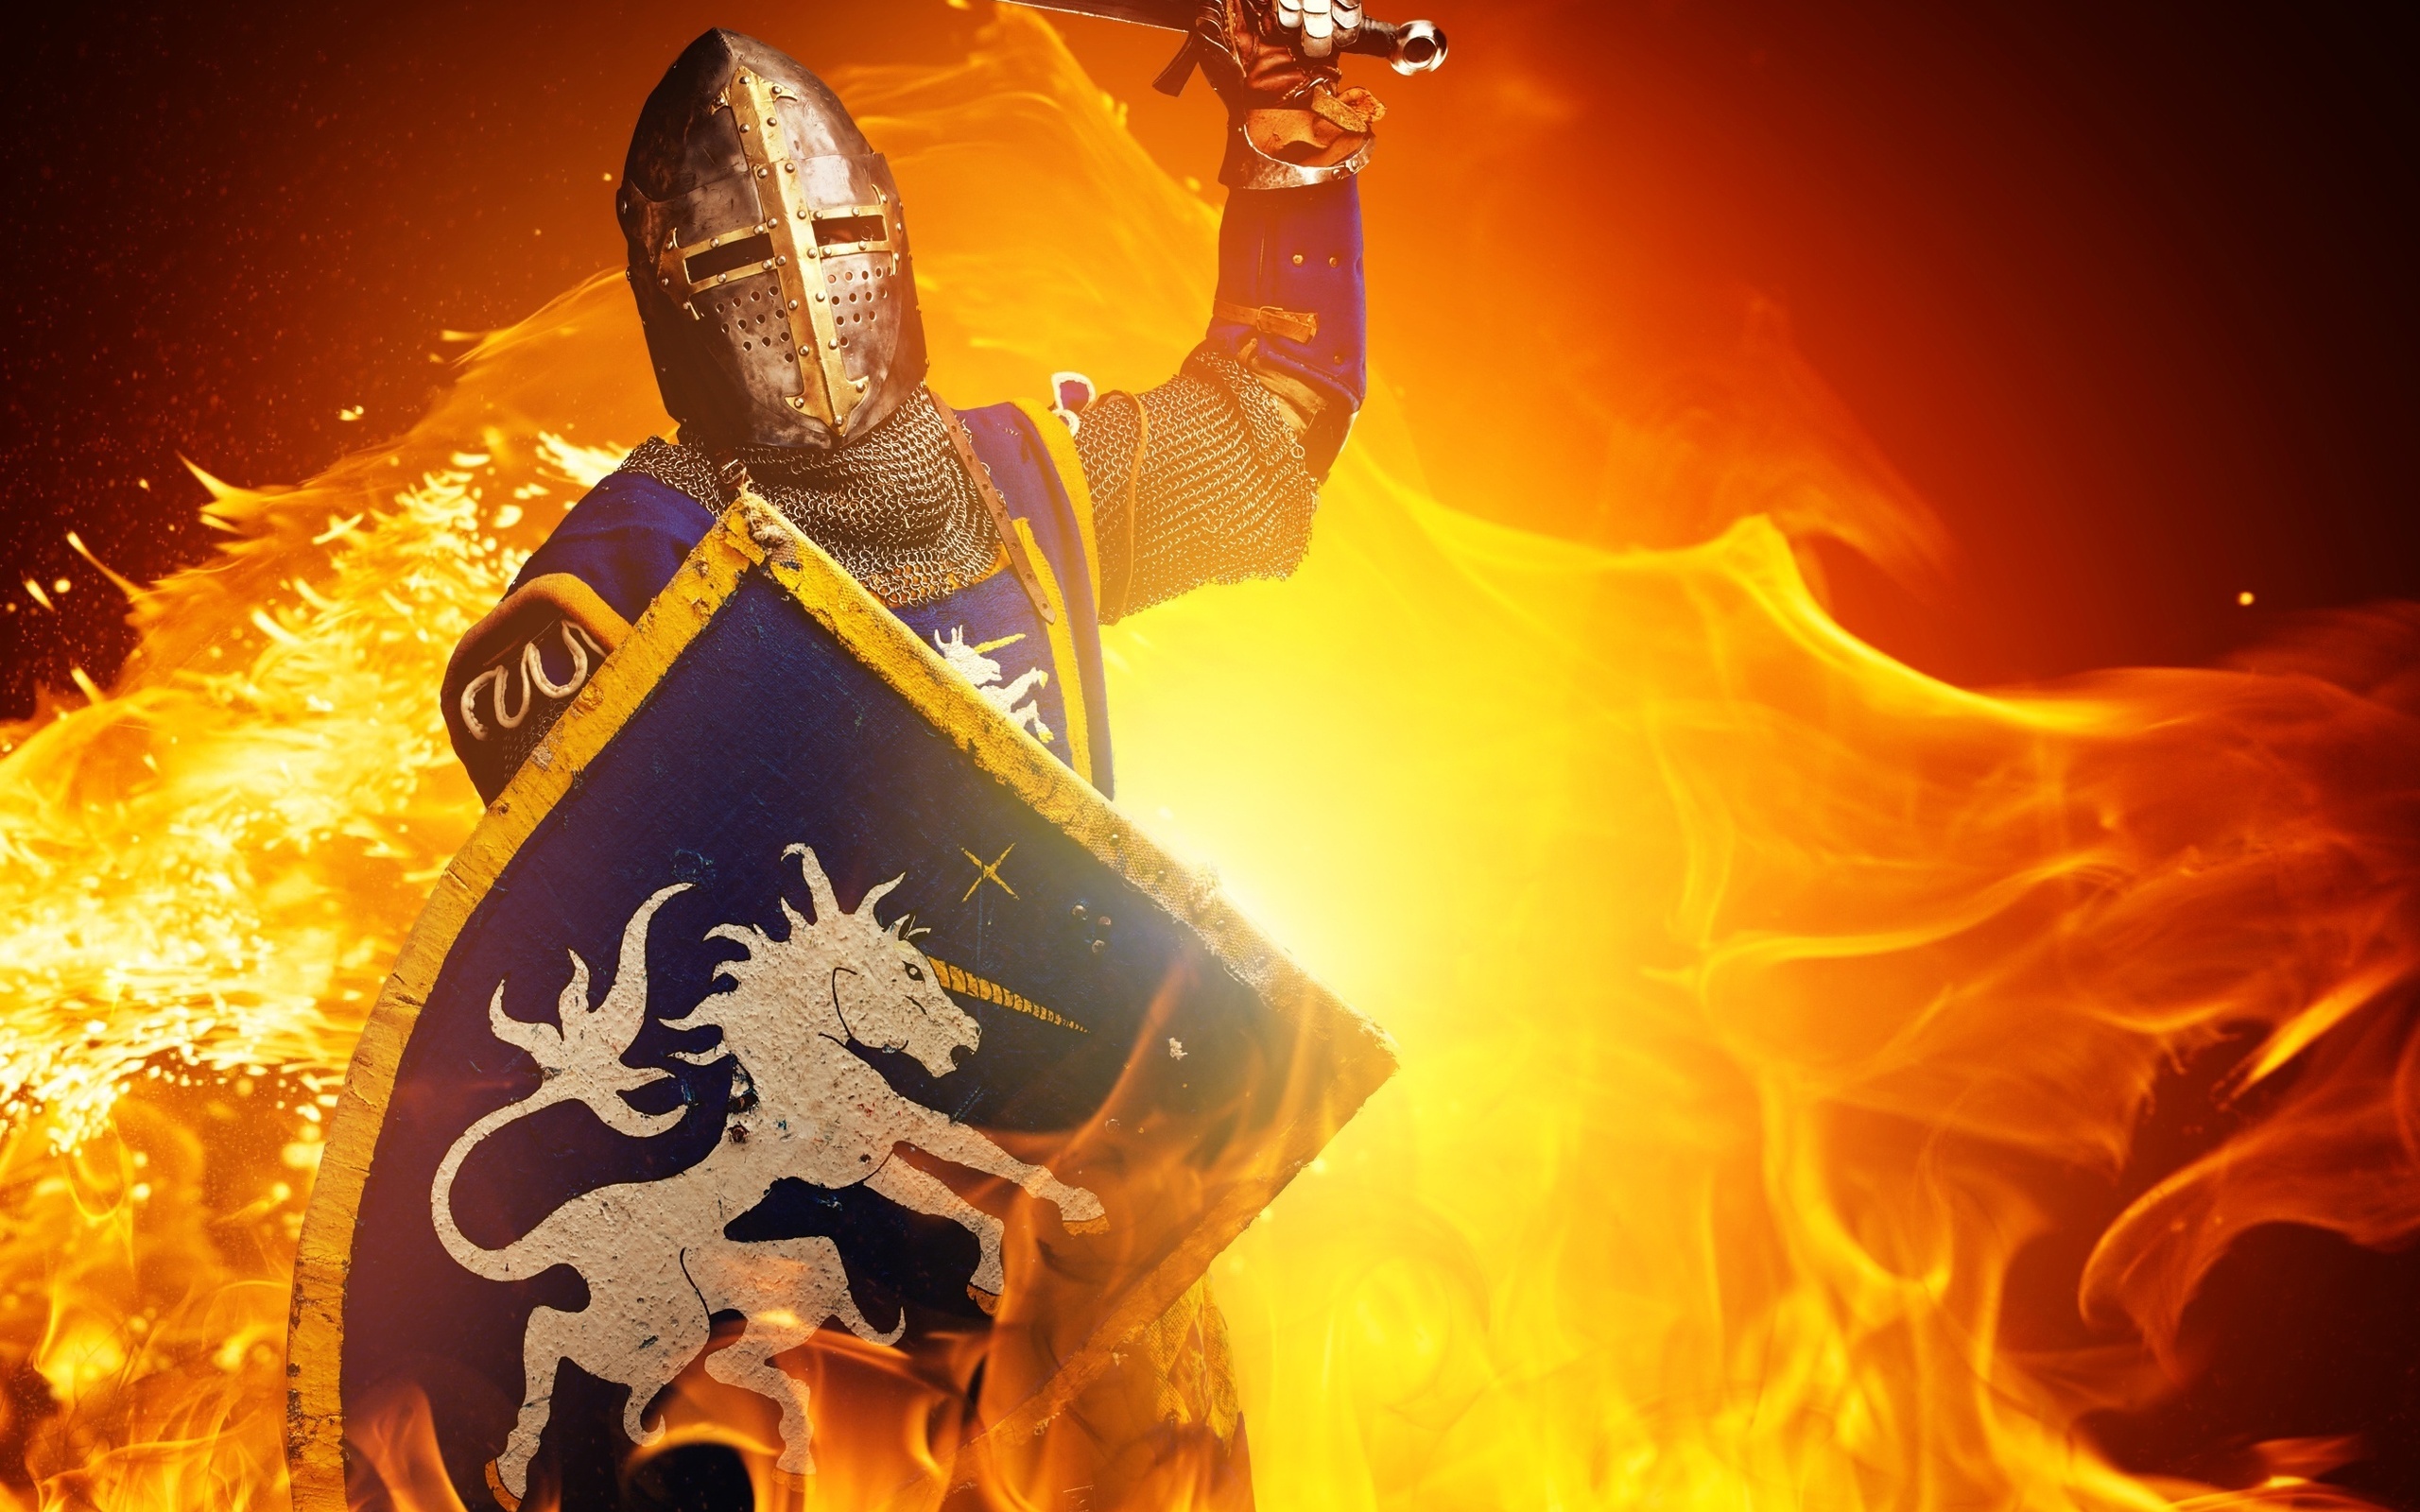 بکگراند خیالی فانتزی سرباز رومی با زره فولادی توری در میان شعله های آتش ویژه طرفداران اسطوره های رومی